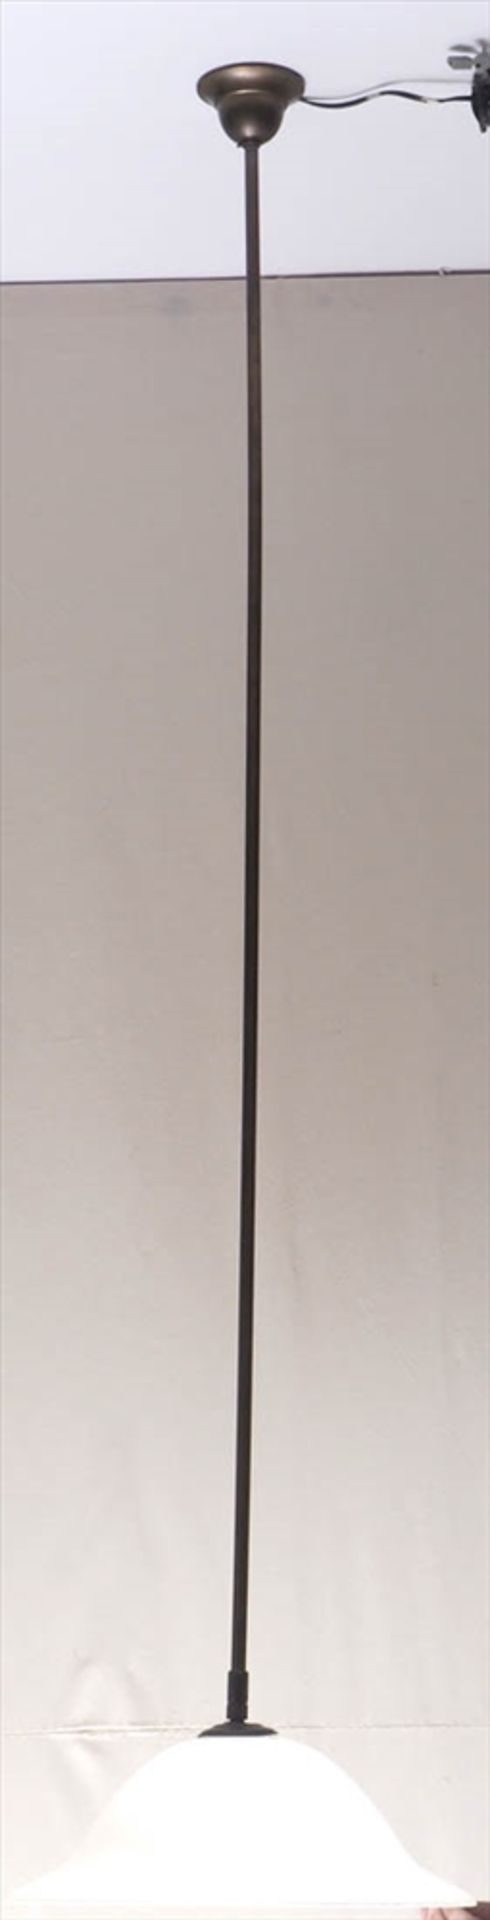 DeckenlampeZylindrischer Aufhängungsstab mit weißem Opalinglasschirm. H. des Stabes 140cm. - Image 2 of 3